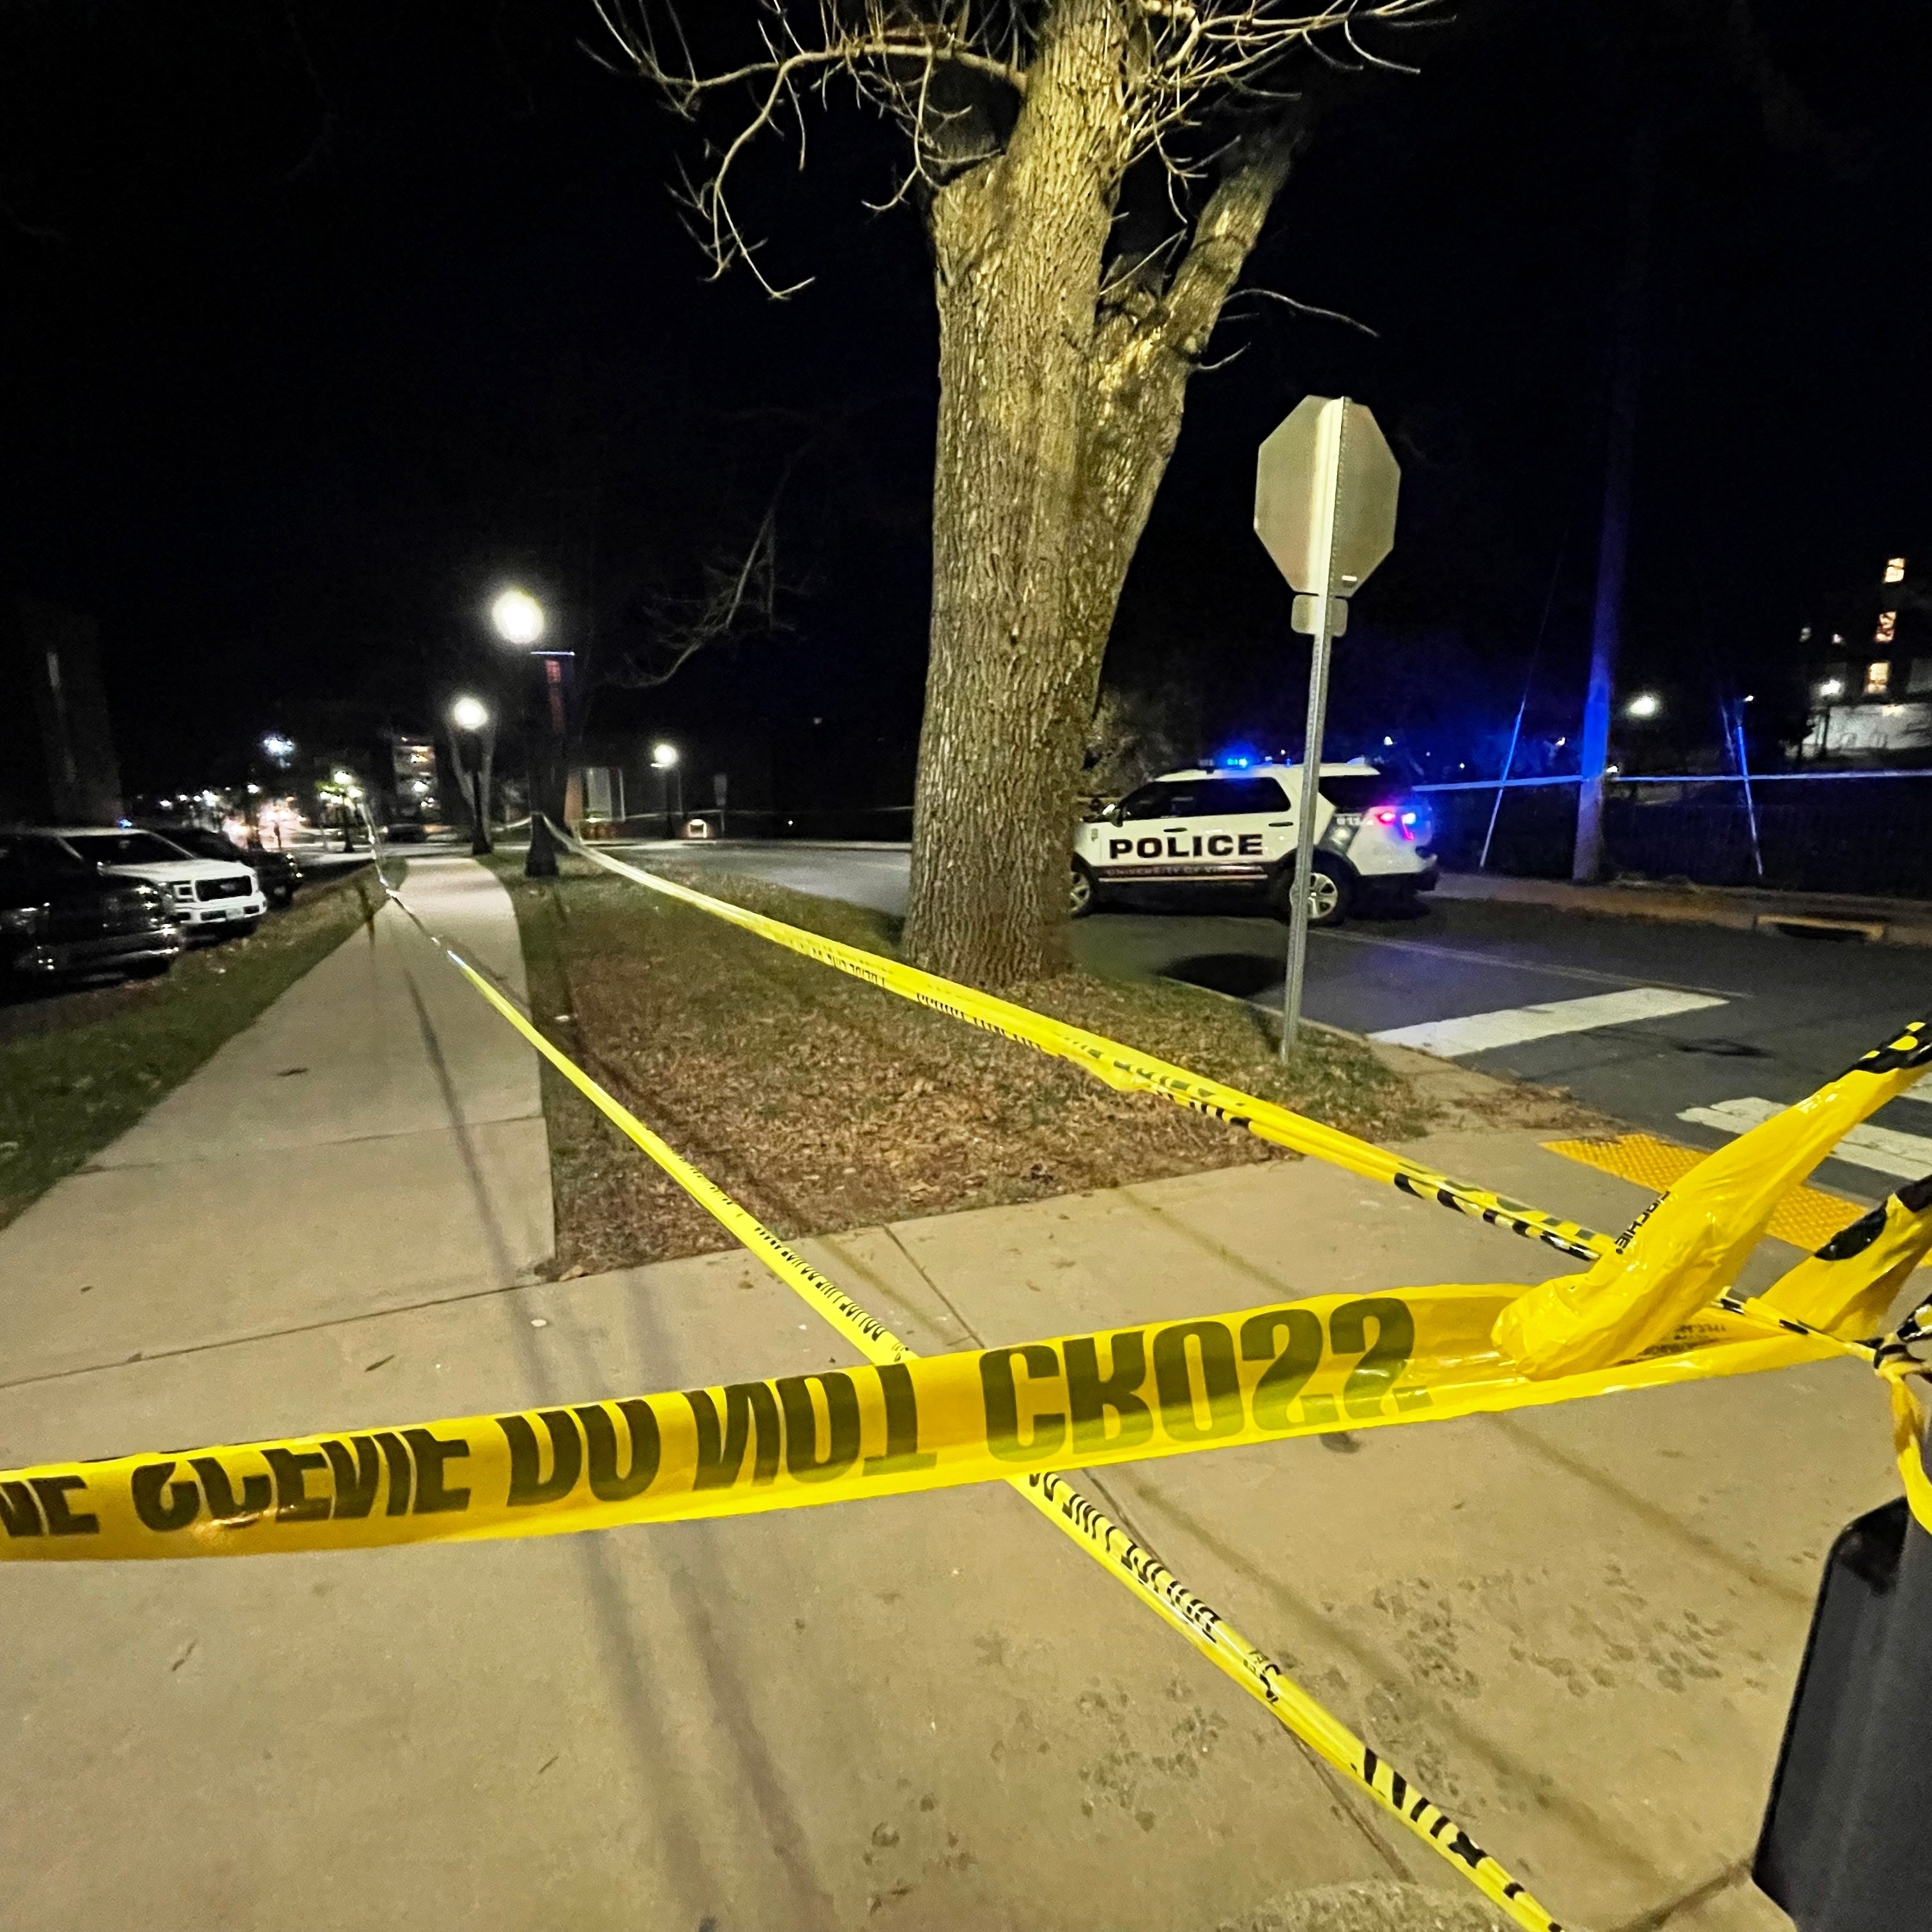 Dois mortos e seis feridos em tiroteio em Idaho nos EUA - SIC Notícias